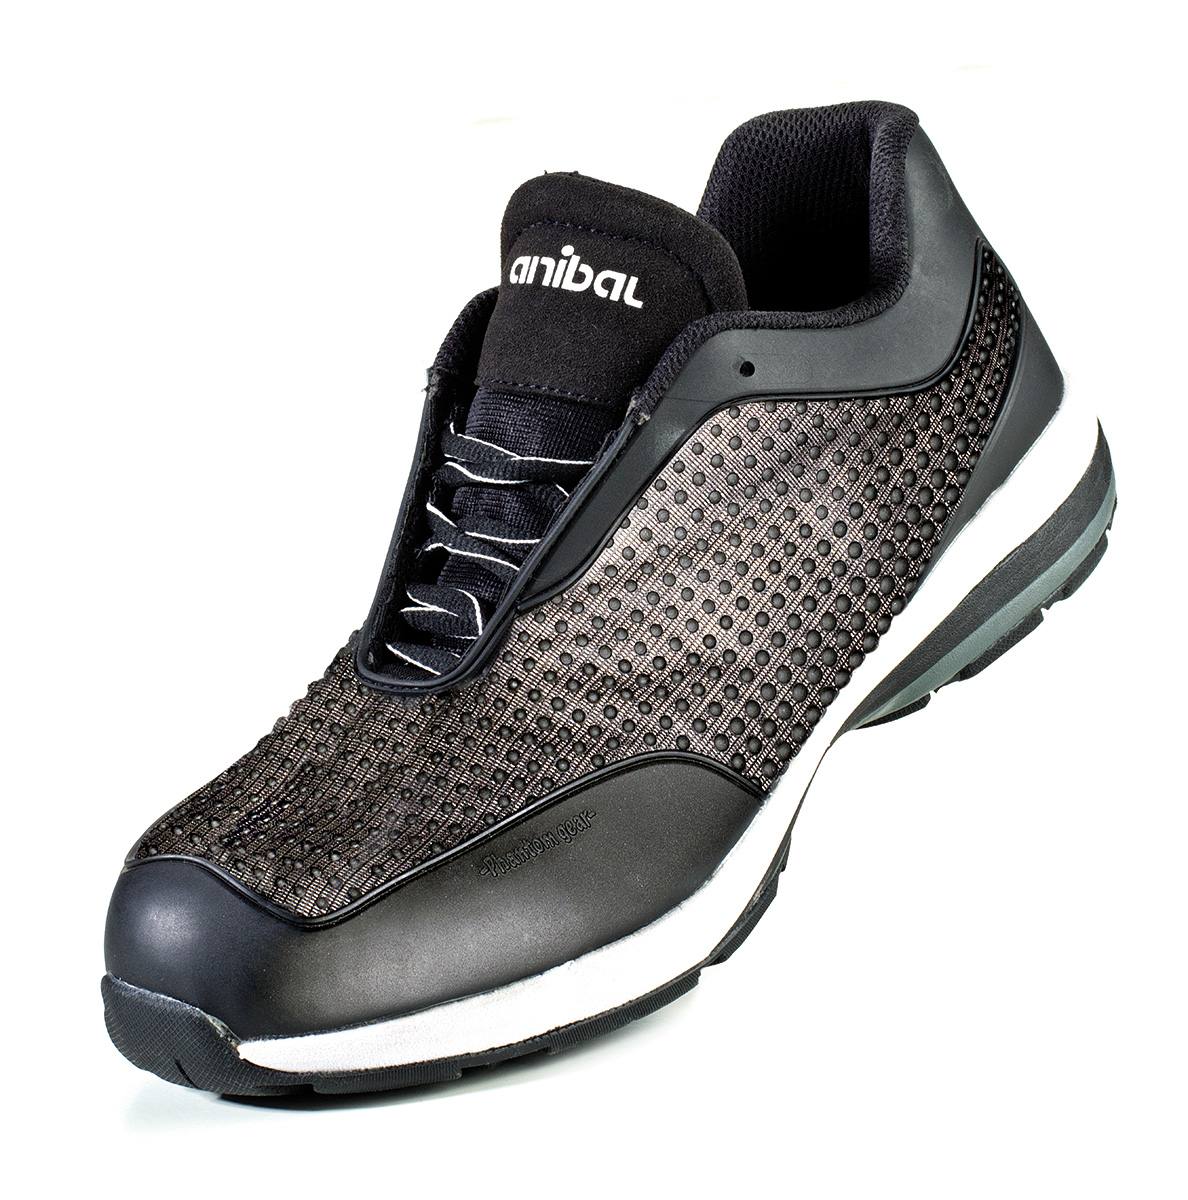 1688-ZPH Chaussures de securite Sporty Chaussure mod. “OXILOS”. Chaussure microfibre S1P avec technologie Phantom Haute Visibilité. Semelle SRC double densité EVA/Gomme.